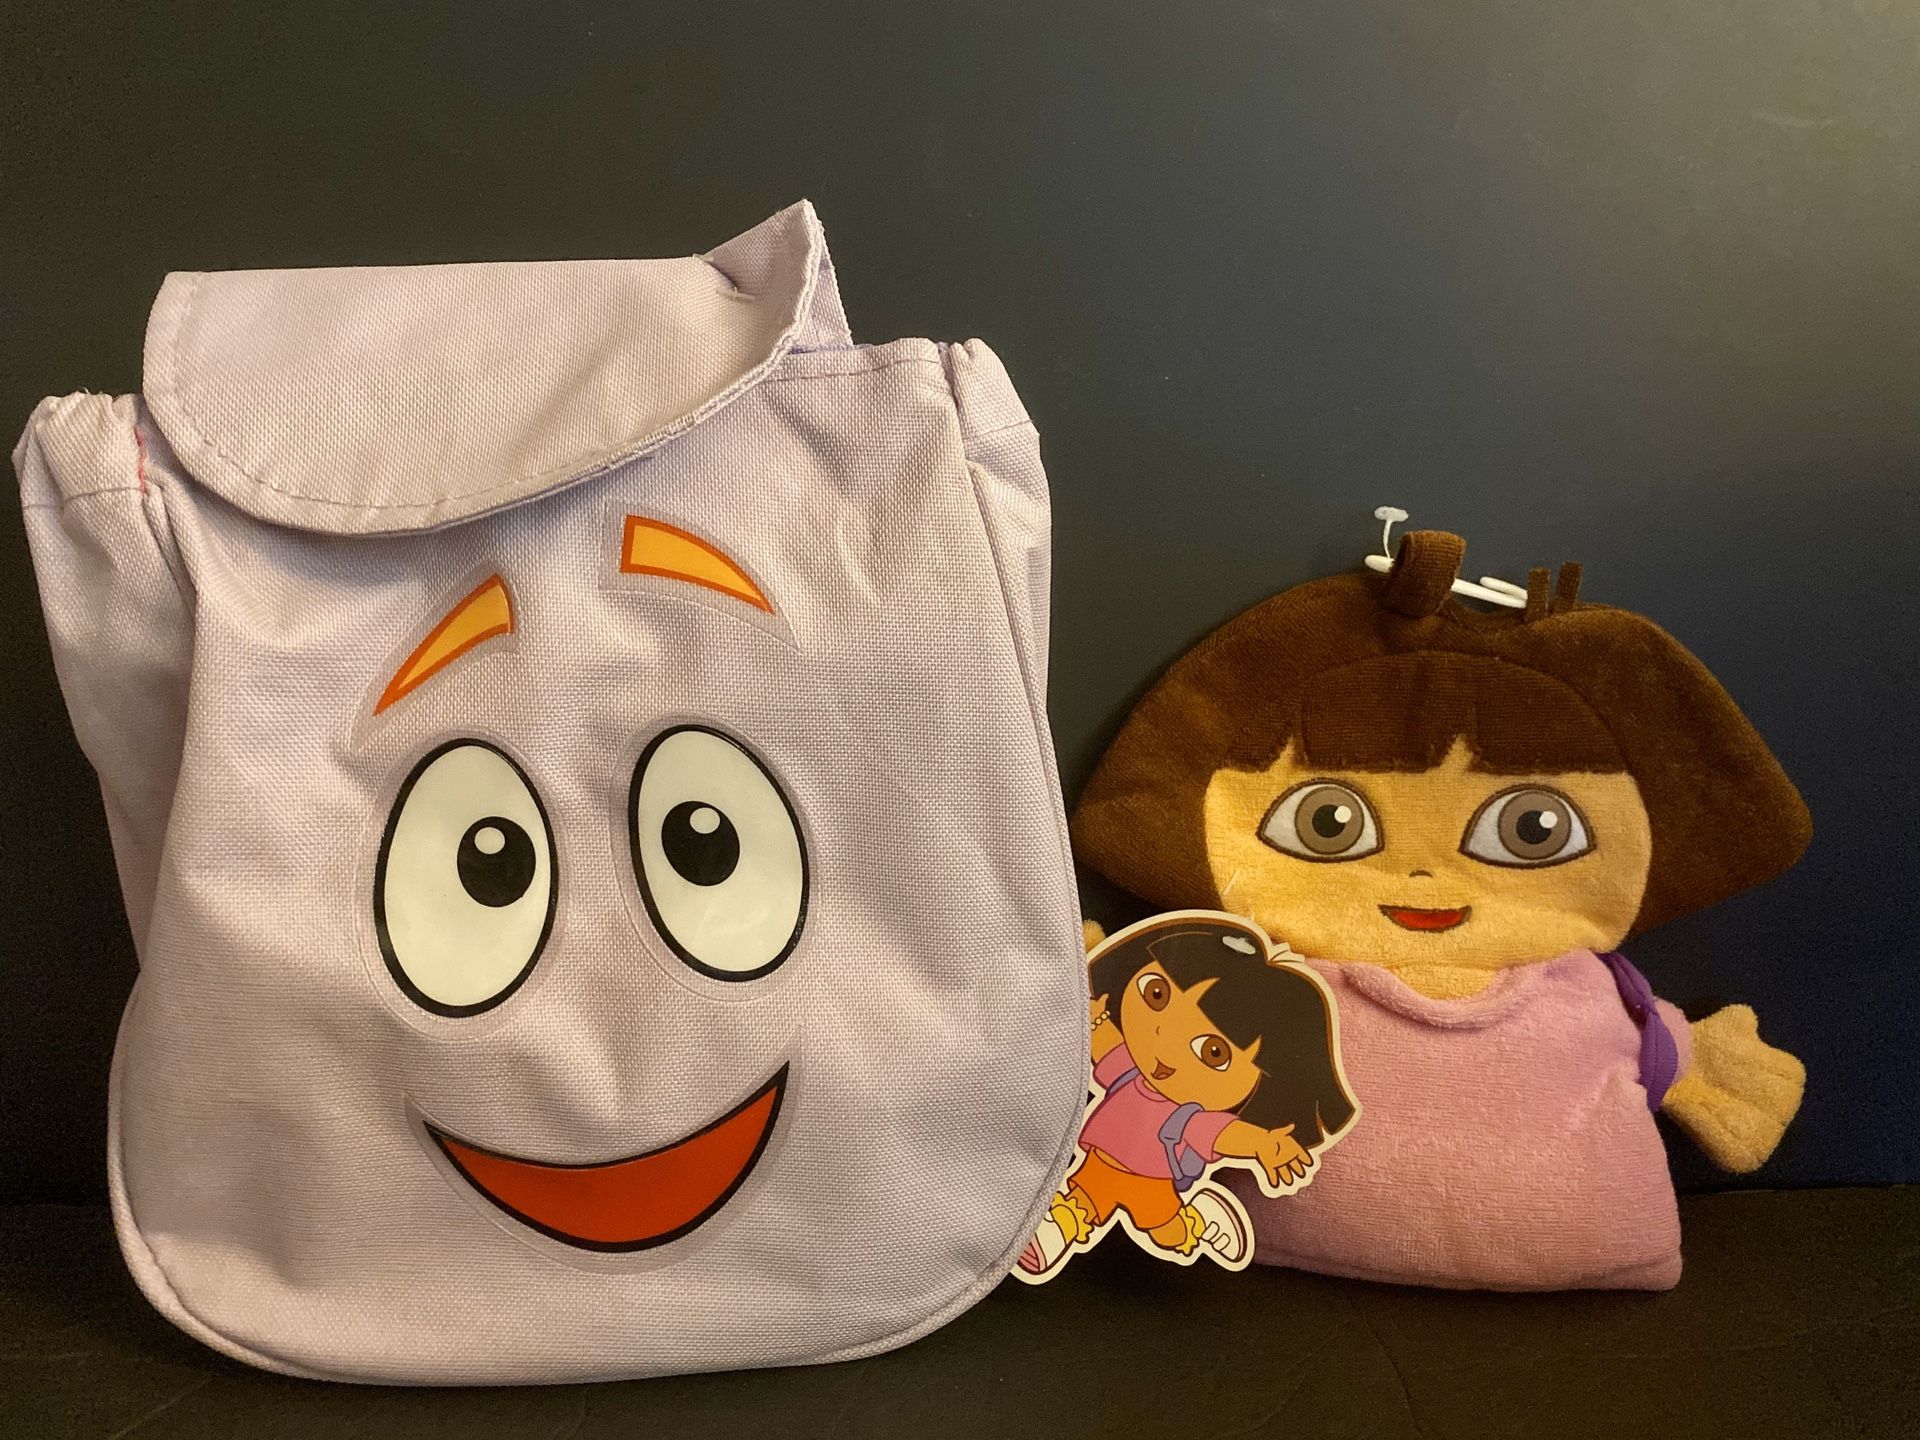 Dora Bundle: Hand puppet + Backpack (w/ games inside)